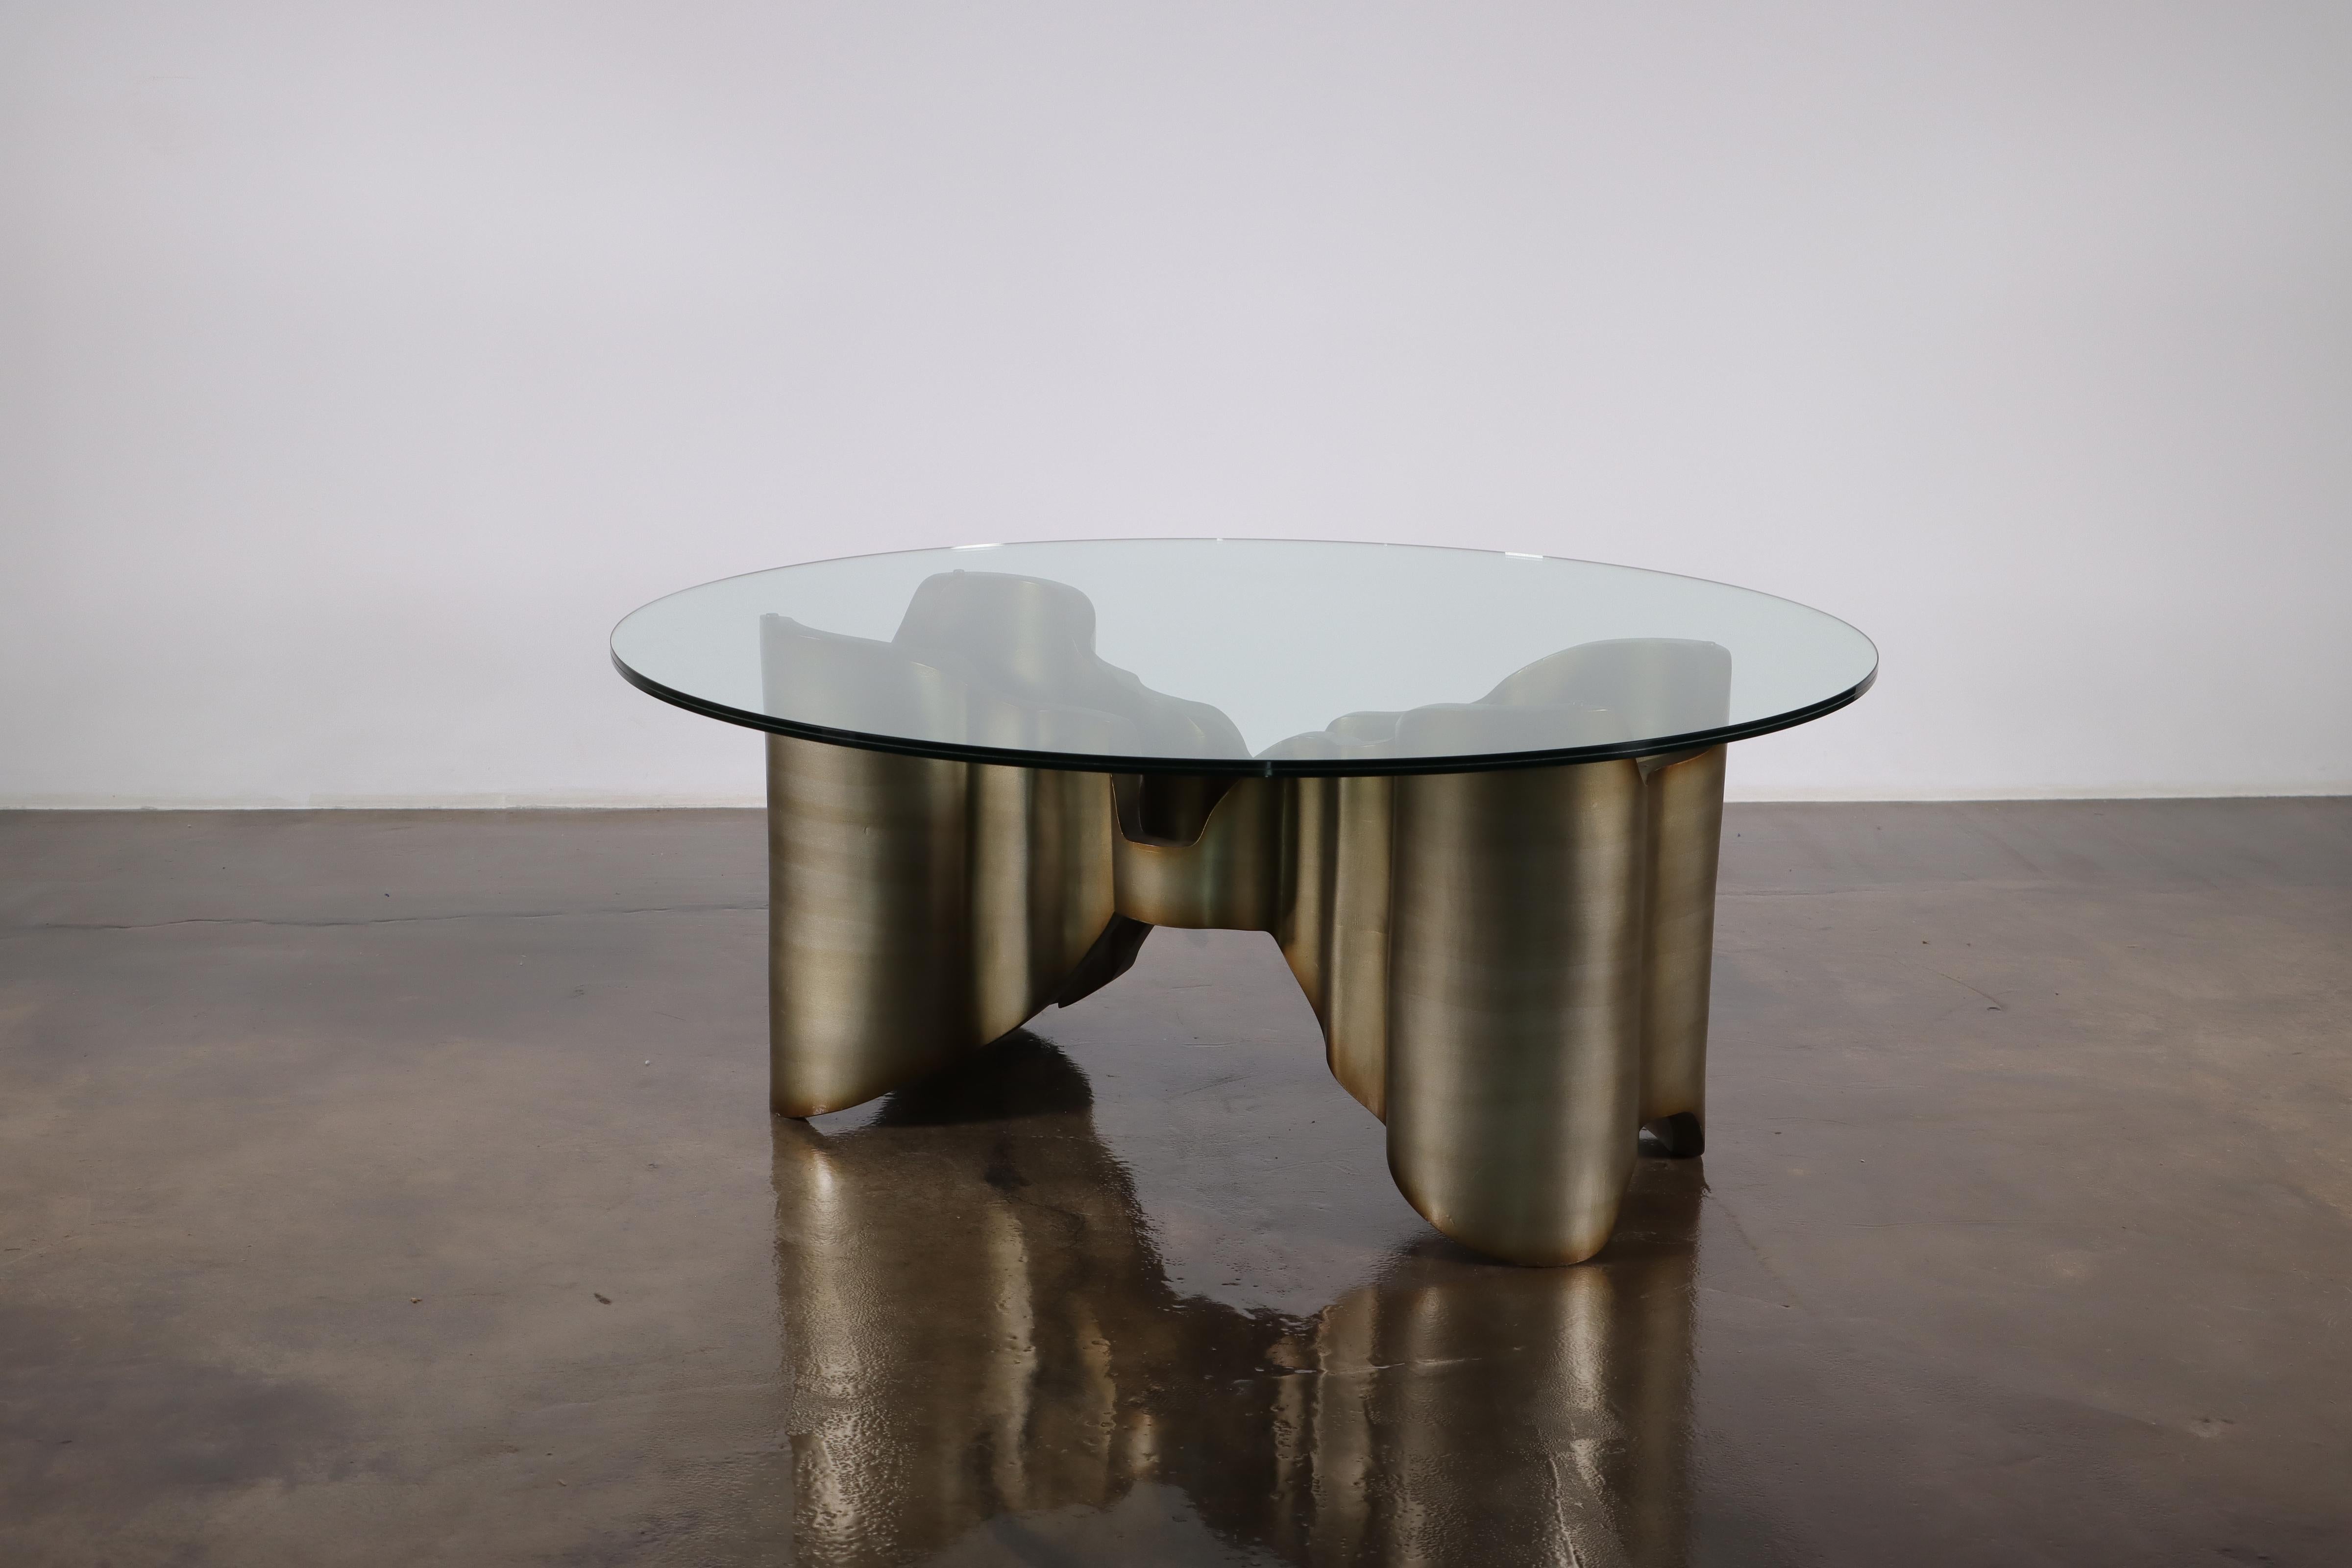 Table basse sculpturale en bois laqué et verre par Costantini, Mariposa -En stock

Les mesures sont 42